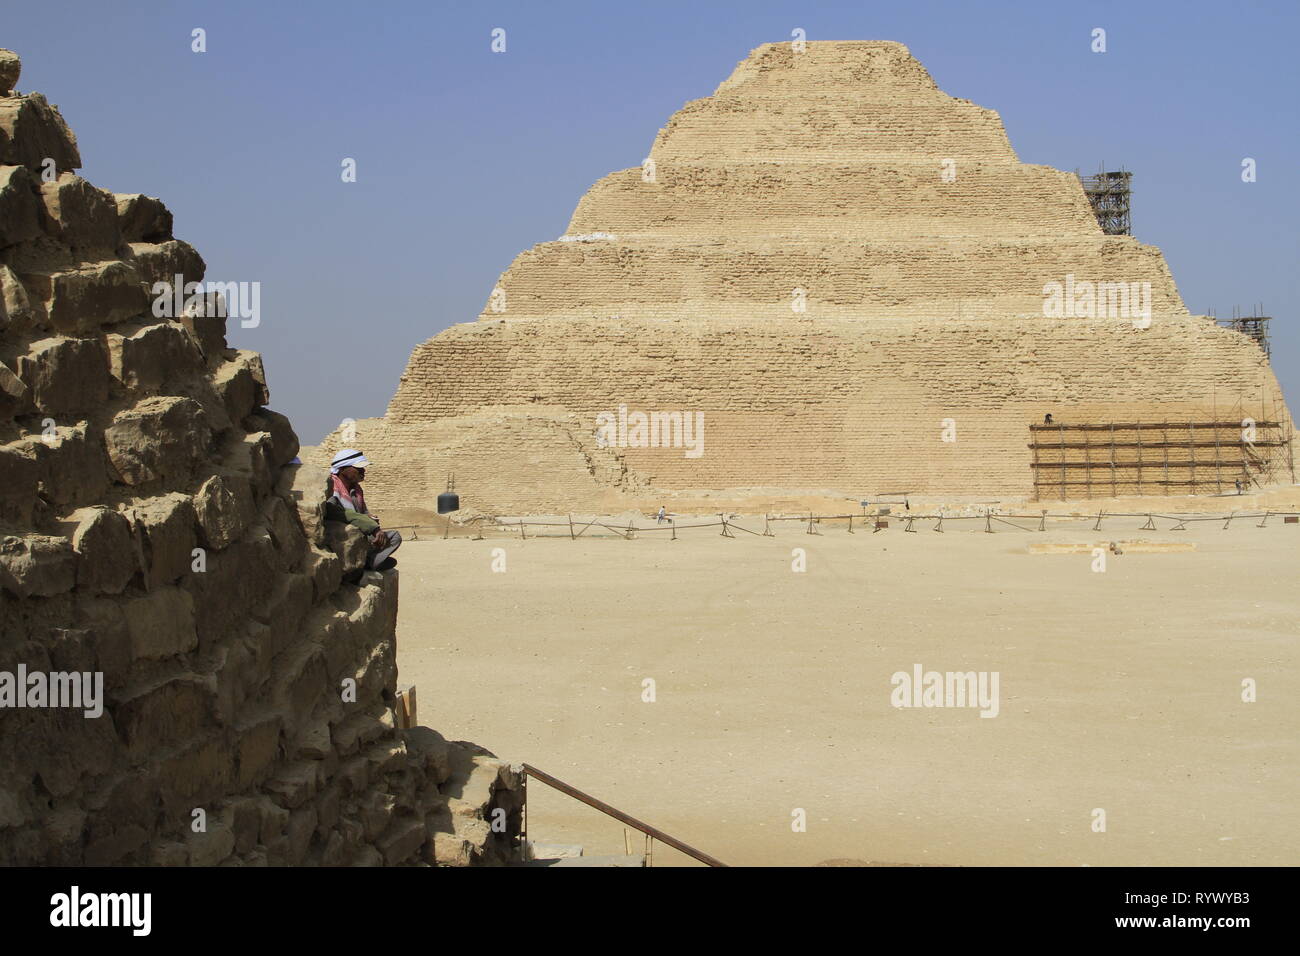 Der Mensch im Vordergrund sitzend mit einem Sonnenhut, trat Pyramide des Djoser im Hintergrund, Gizeh, Sakkara Governorate, Ägypten Stockfoto